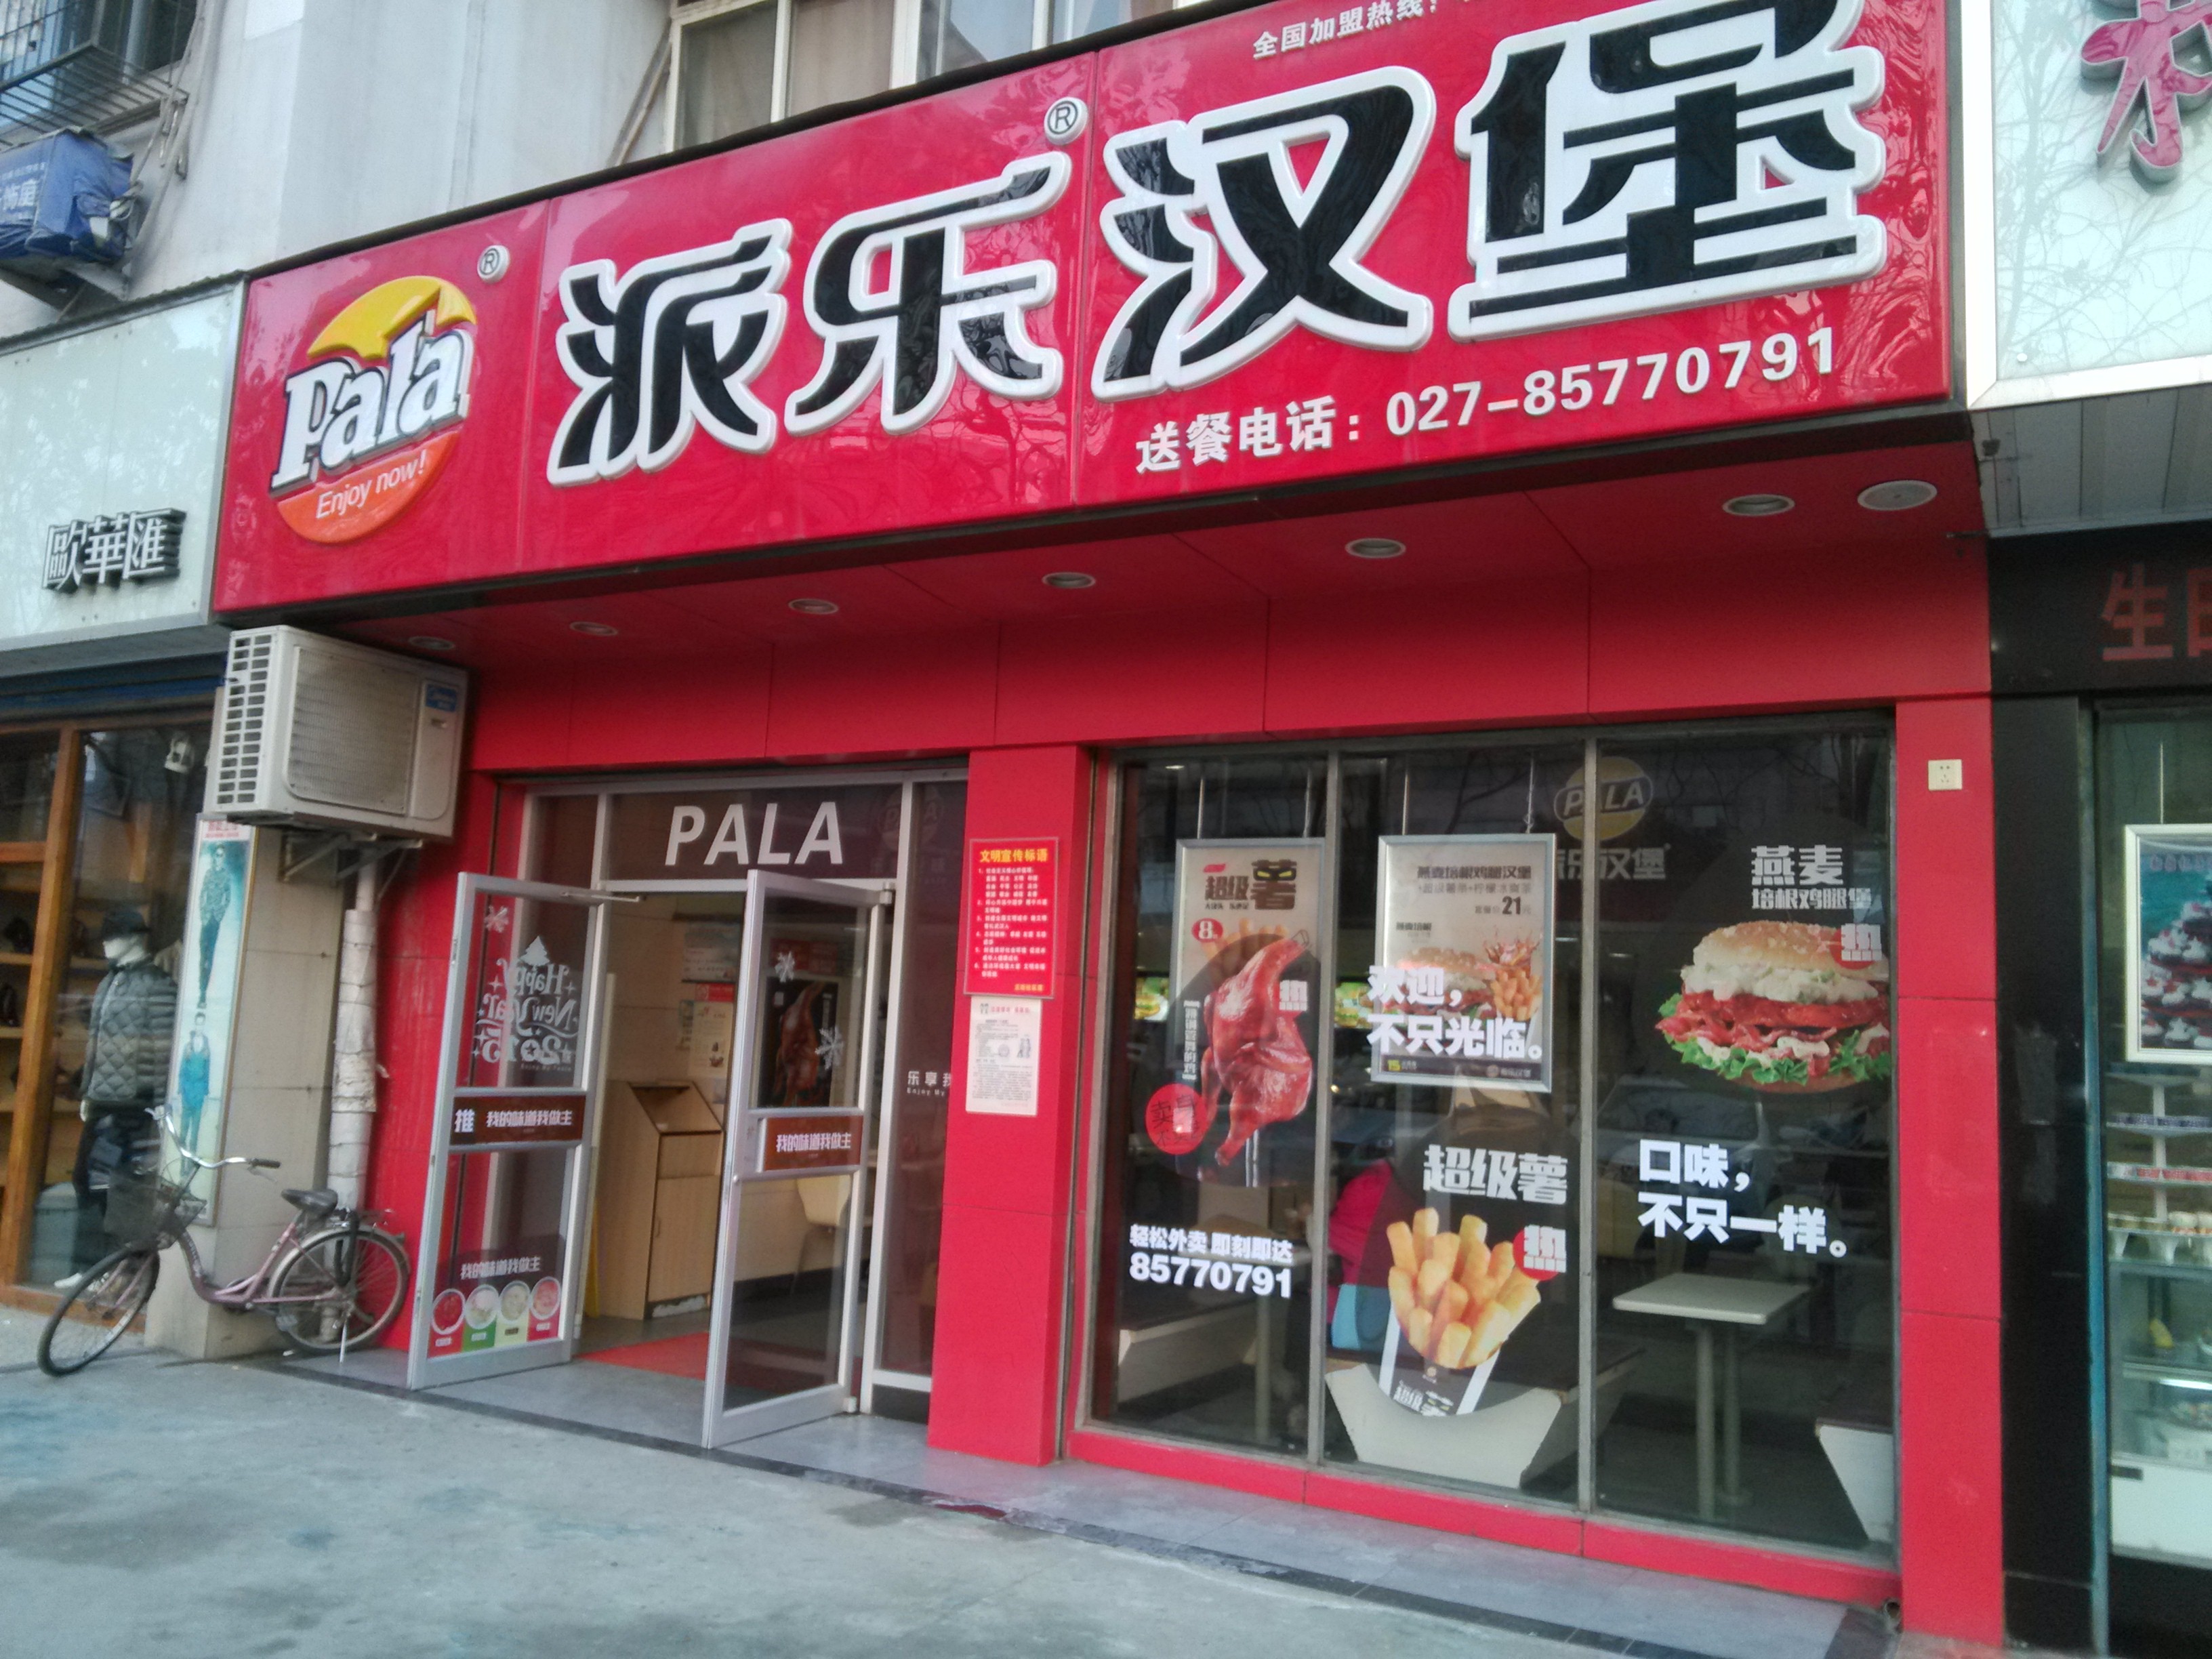 不忘初心、牢记使命，派乐汉堡22周年立志成为中国炸鸡汉堡第一品牌